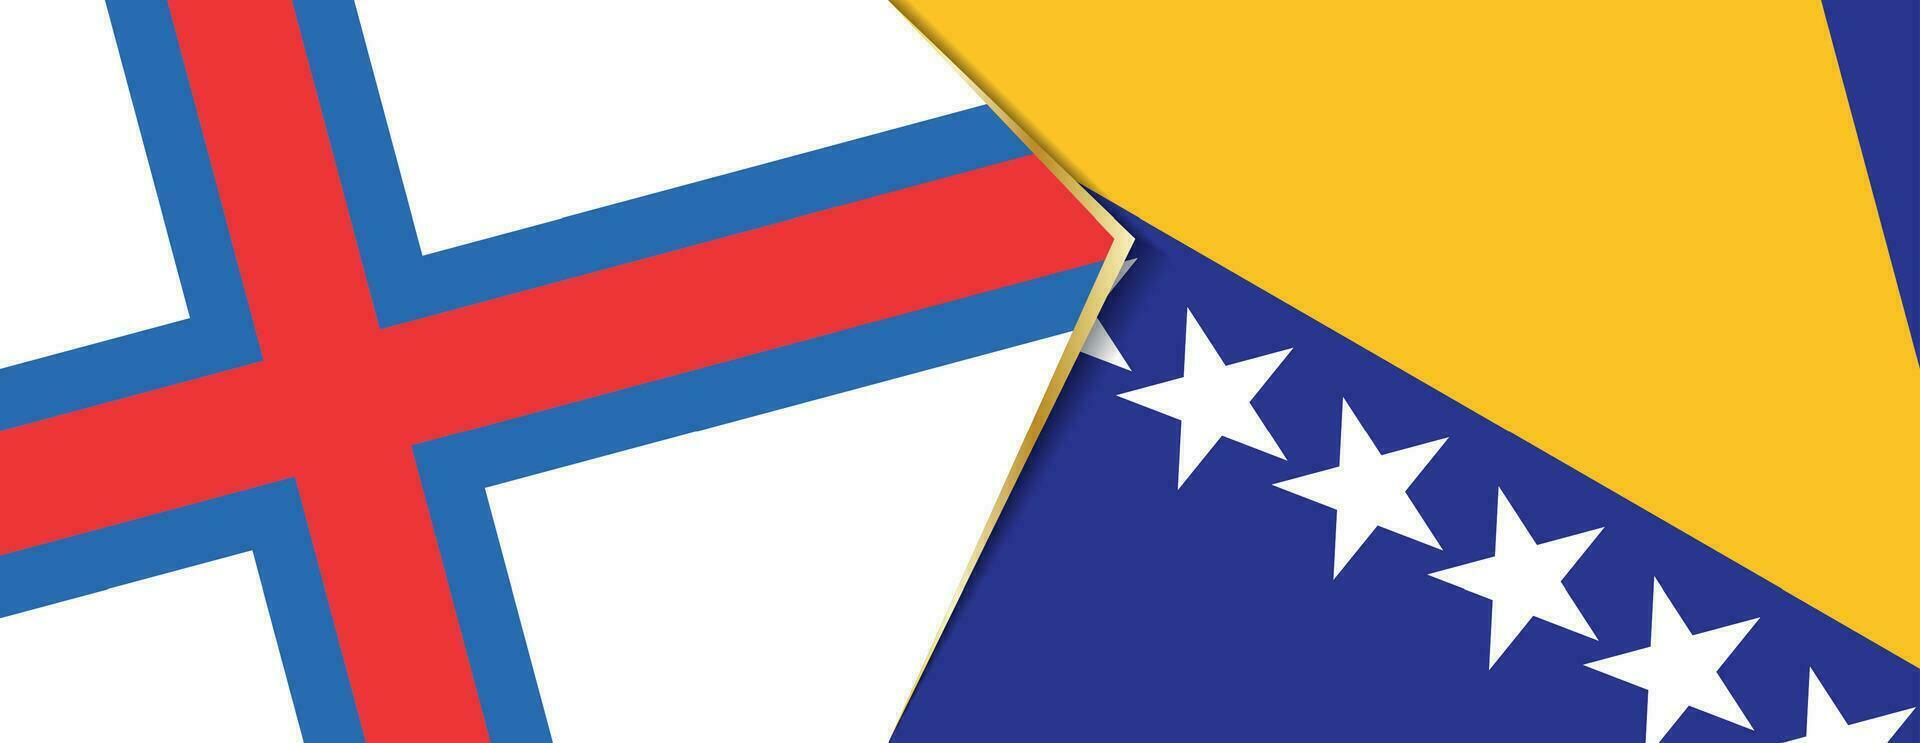 Färöer Inseln und Bosnien und Herzegowina Flaggen, zwei Vektor Flaggen.